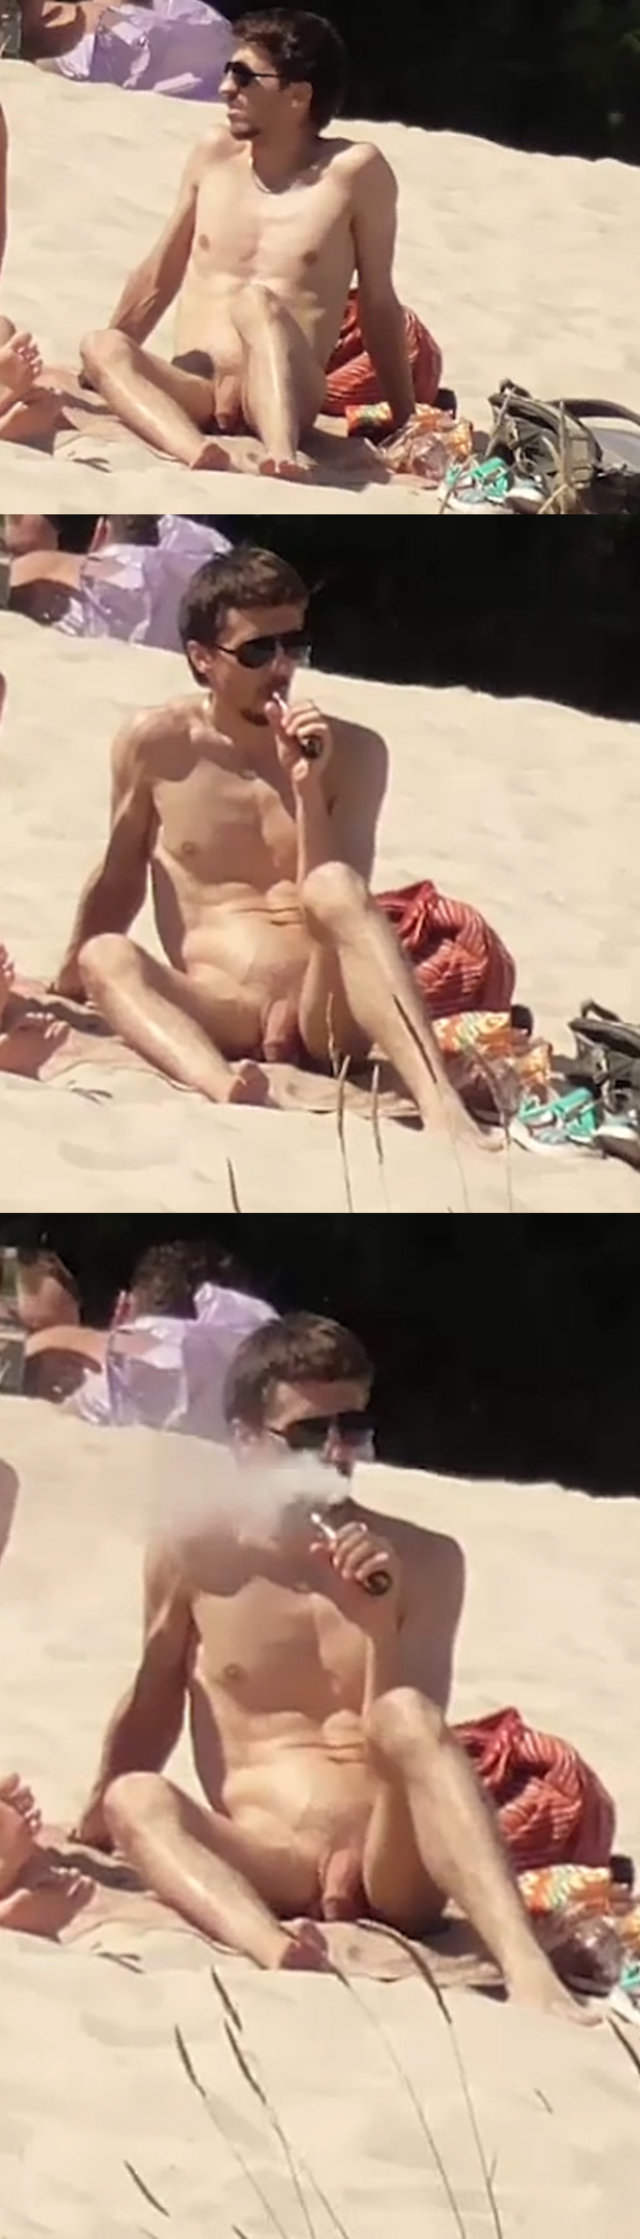 straight guy smoking naked at nudist beach